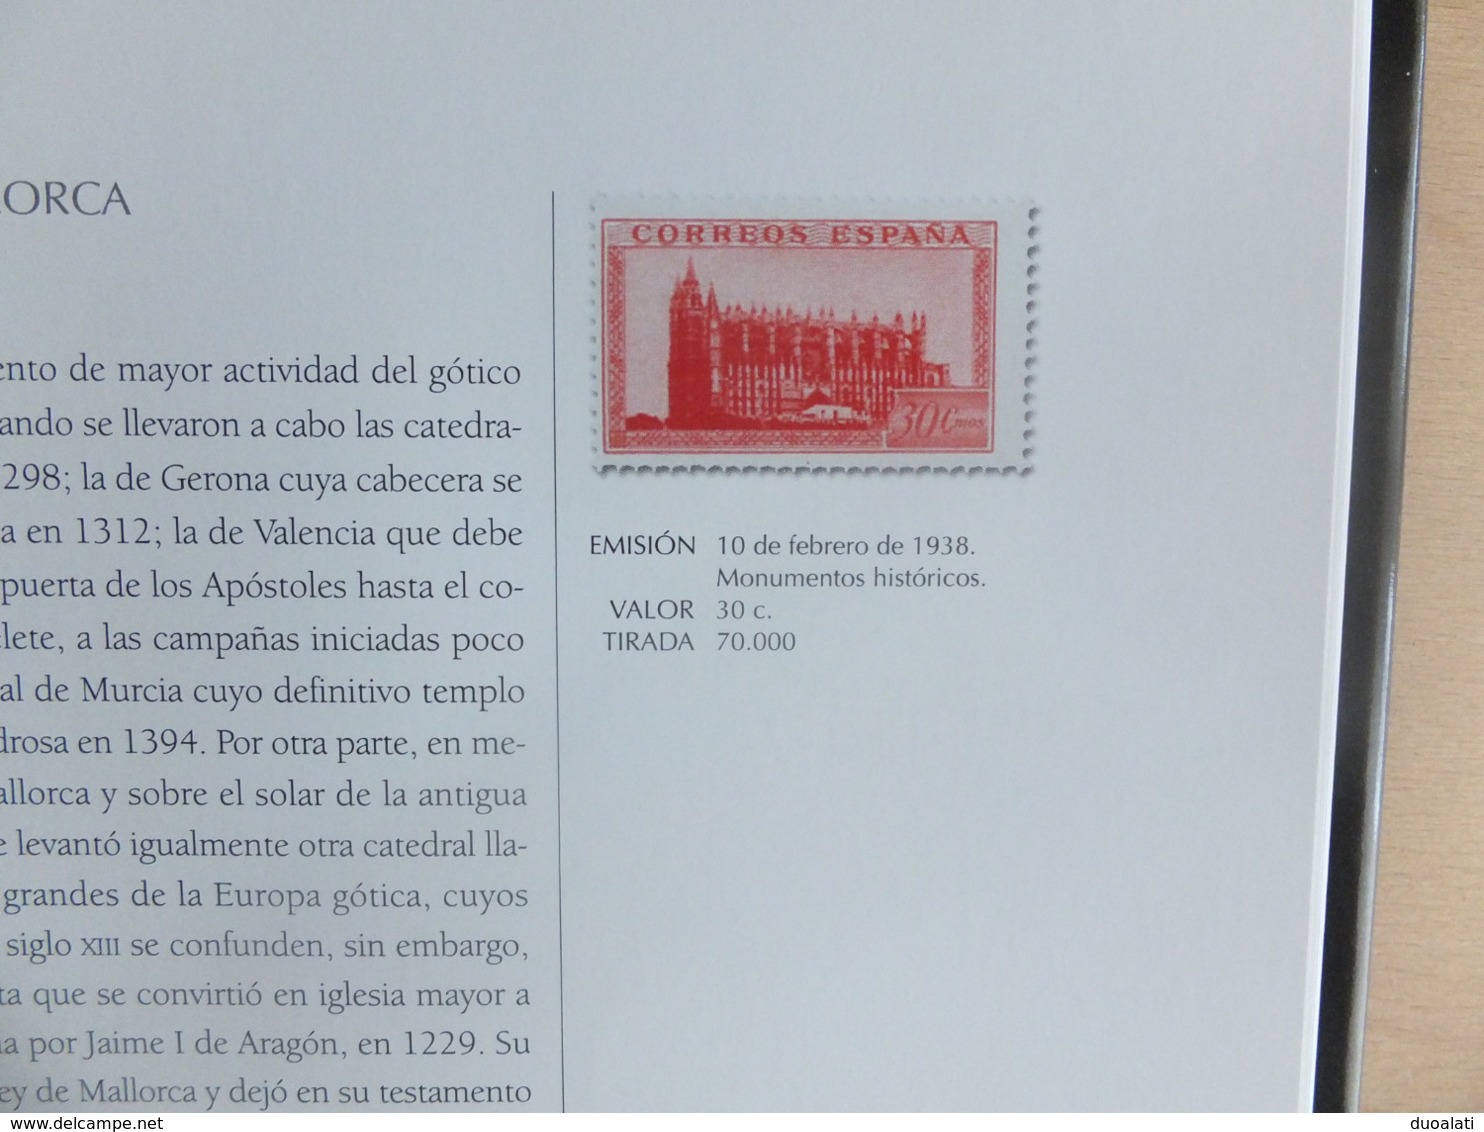 El arte español en el sello Spanish art on the stamps